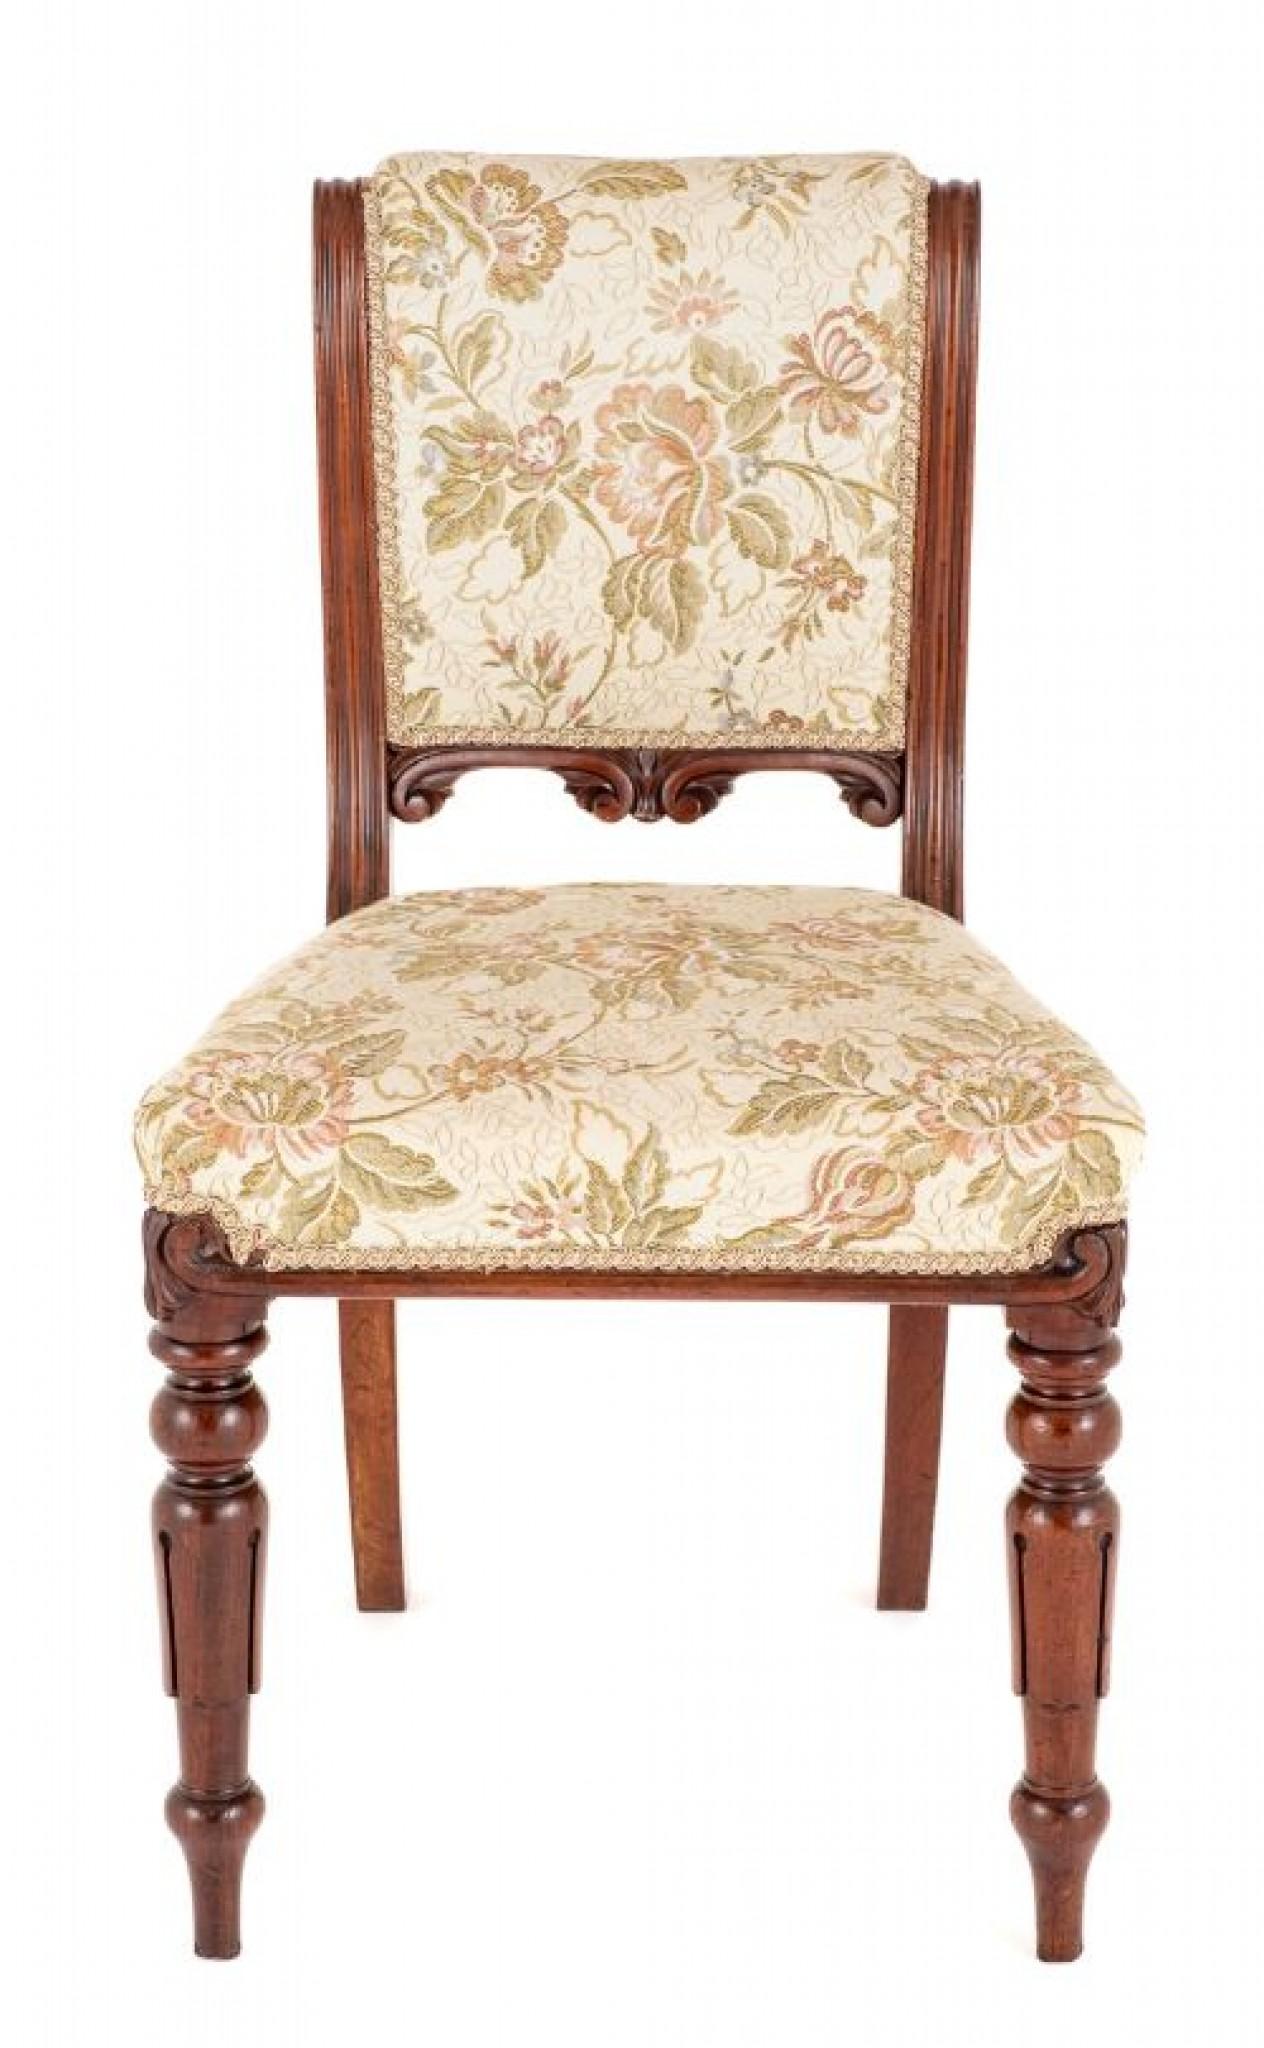 Satz von 8 William IV Mahagoni-Esszimmerstühlen.
19. Jahrhundert
Diese Stühle sind auf typischen William IV gedreht und geschnitzt Tulip Vorderbeine mit Säbel zurück Beine erhöht.
Die Stühle haben einen Stoff über Sitz und Rücken.
Die hinteren